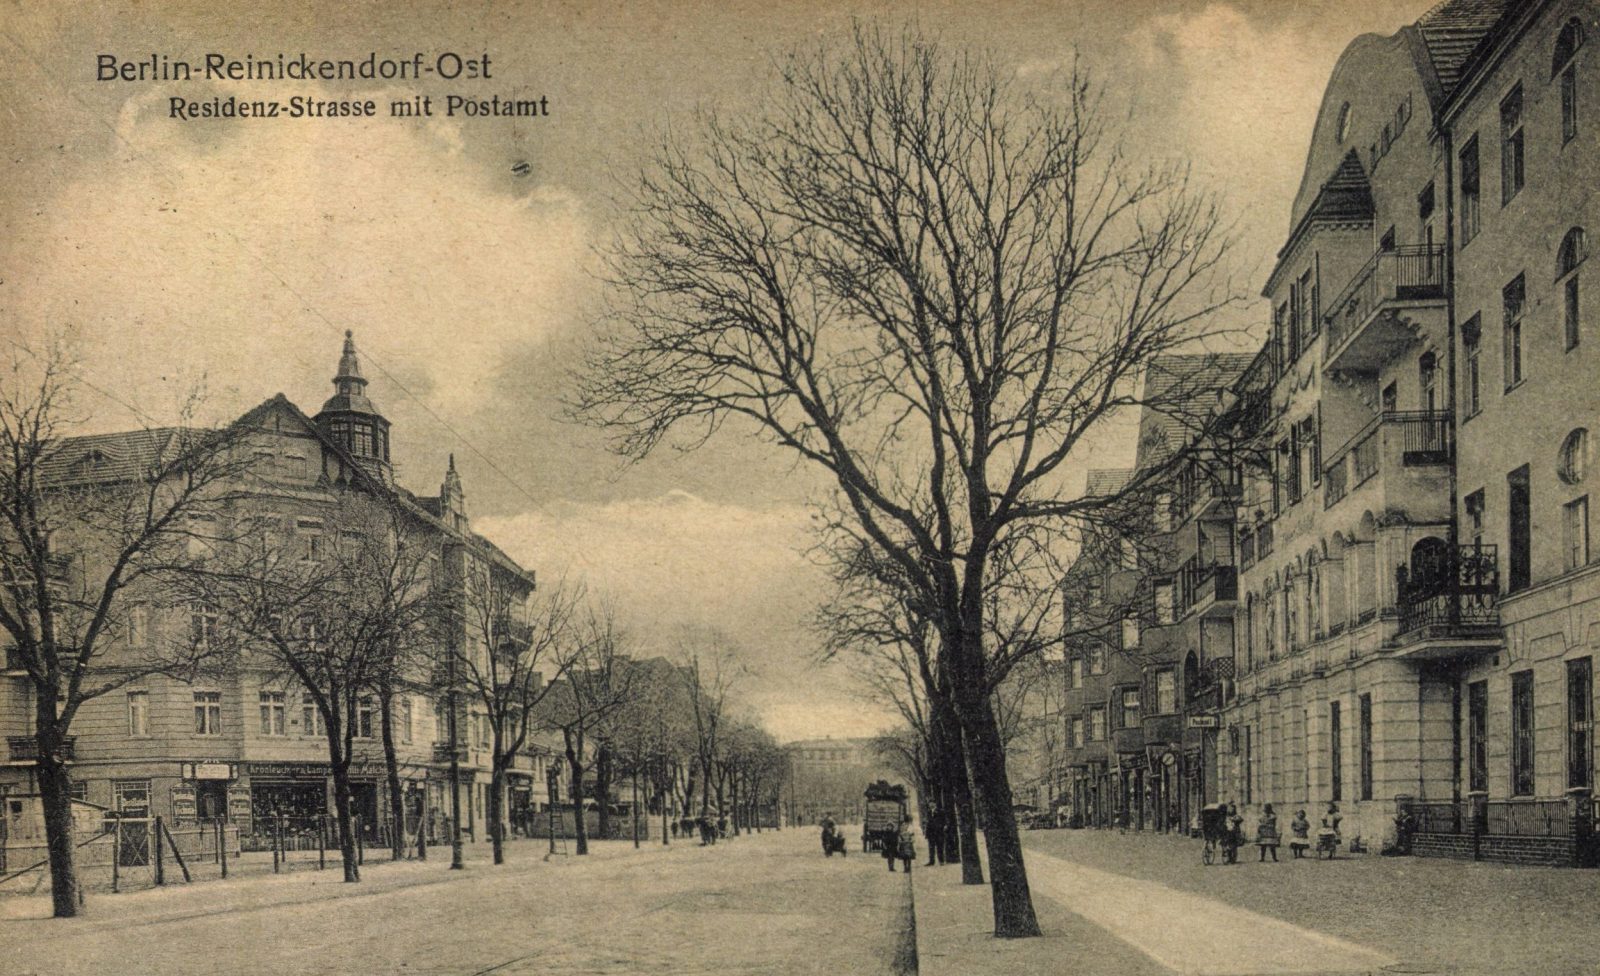 Berlin 1920: Reinickendorf, Residenzstraße mit Postamt.